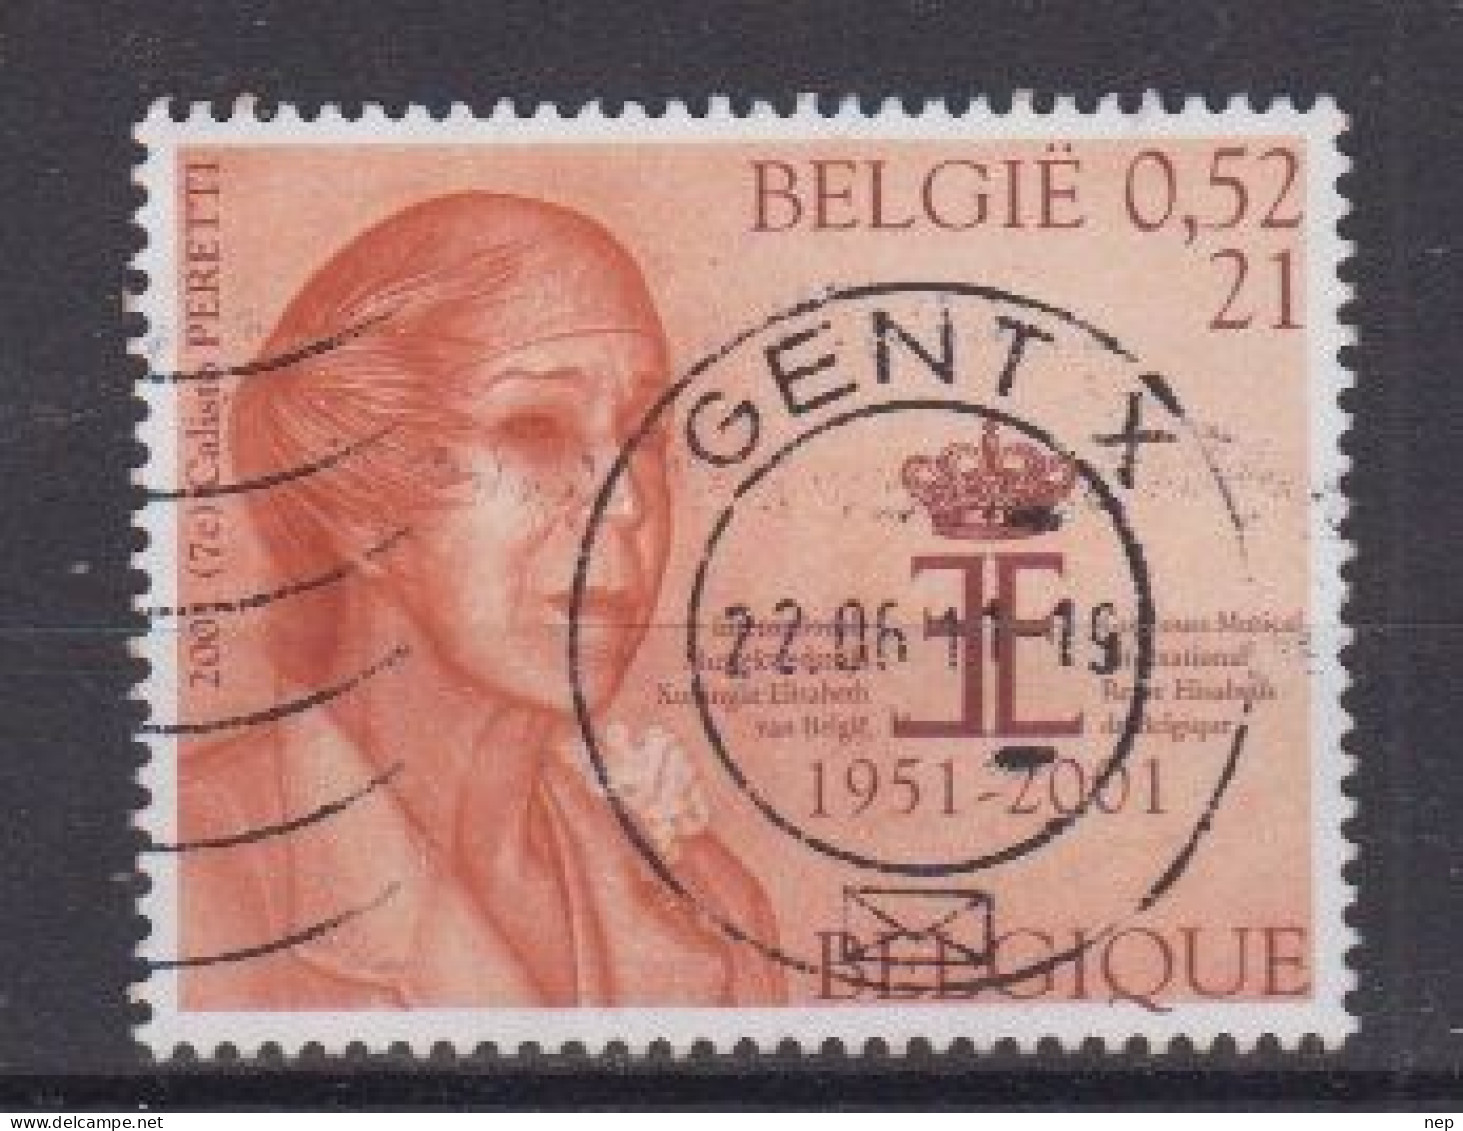 BELGIË - OPB - 2001 - Nr 2992 (GENT) - Gest/Obl/Us - Oblitérés